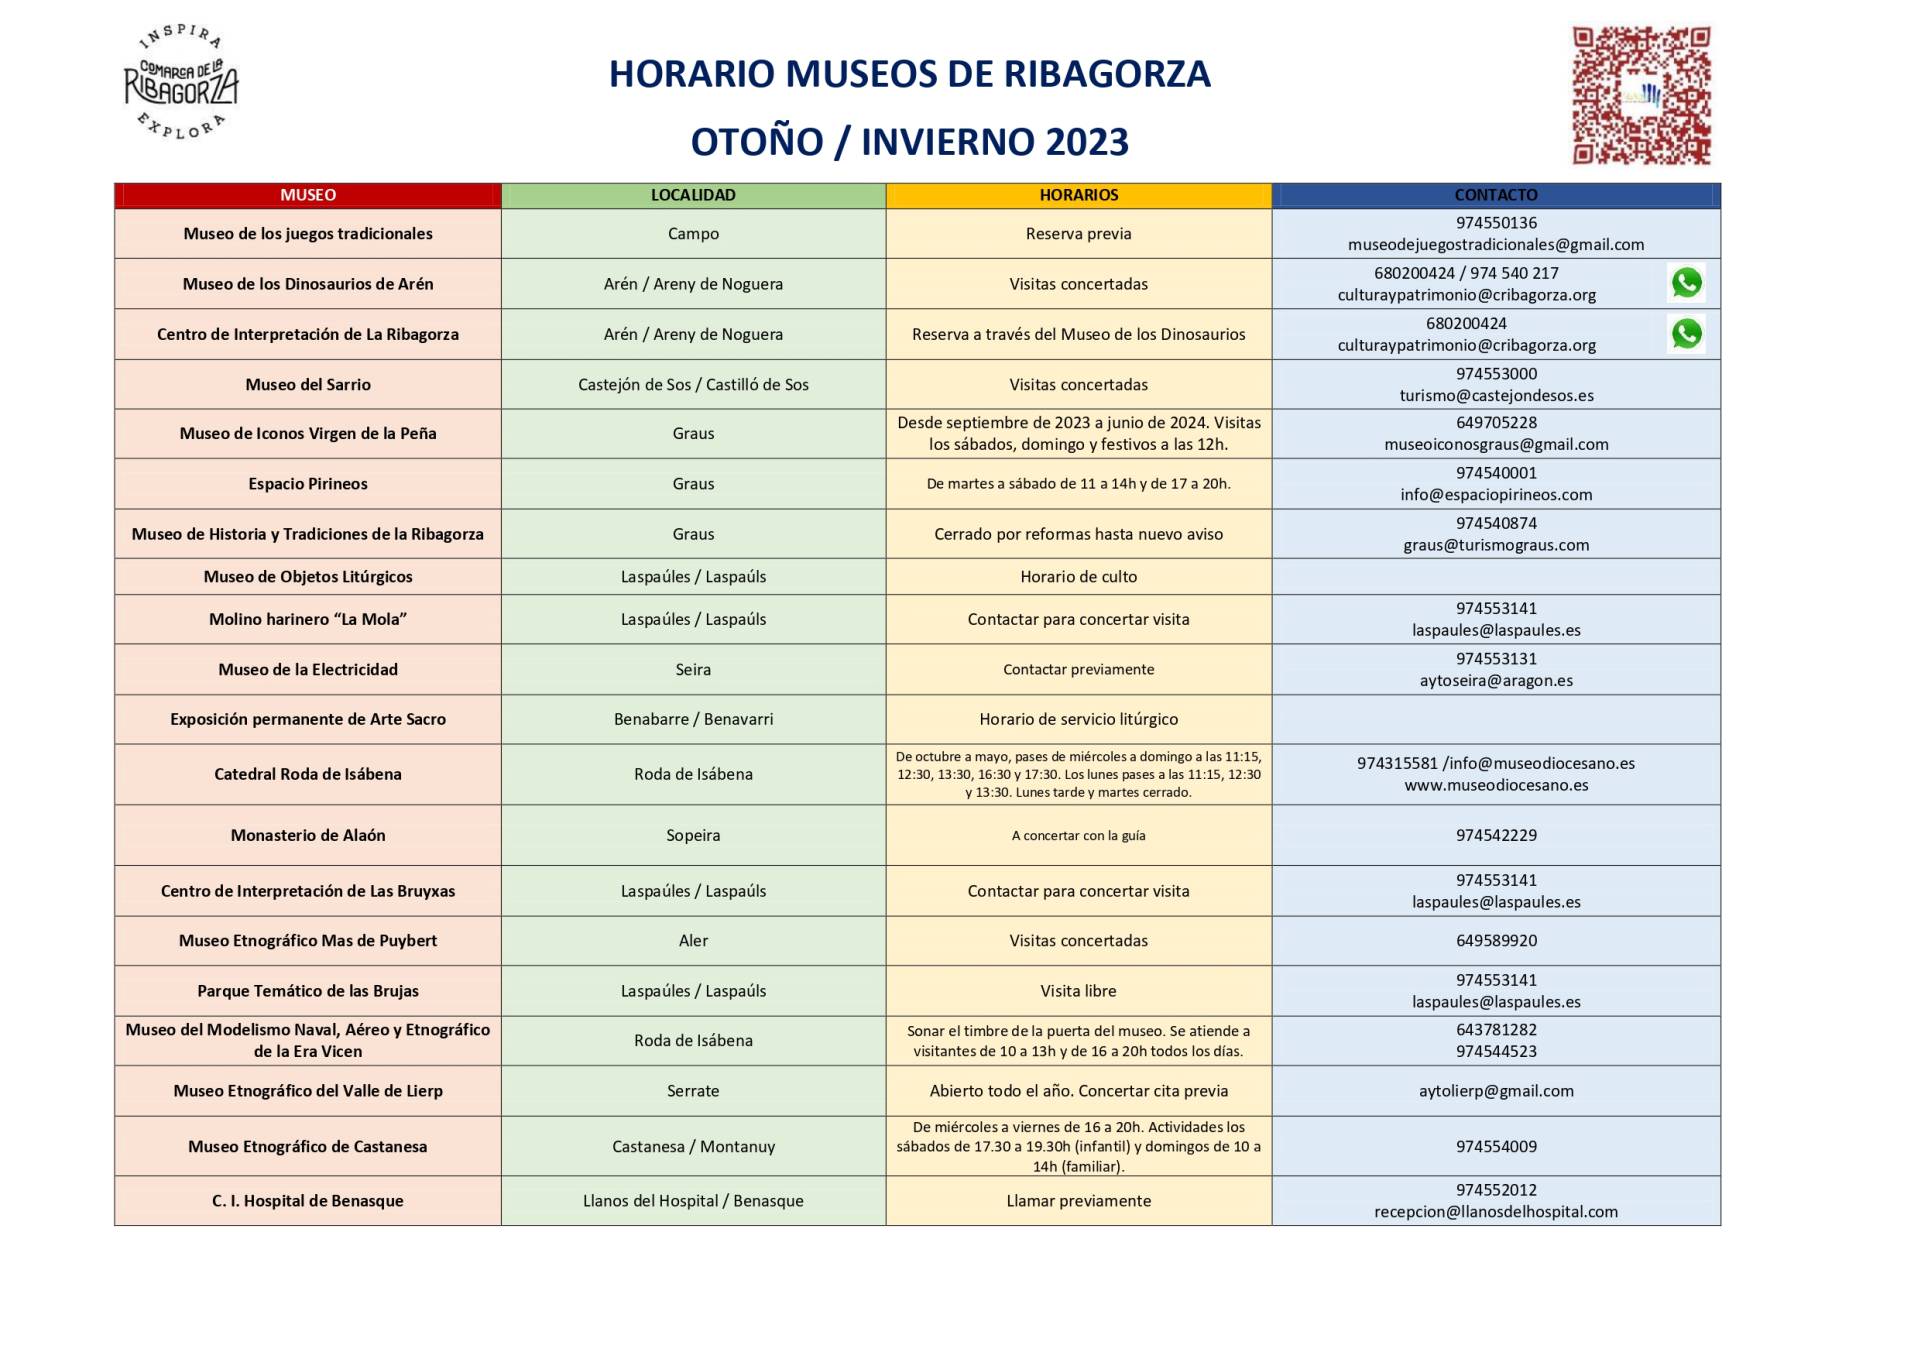 HORARIO DE LOS MUSEOS DE RIBAGORZA OTOÑO / INVIERNO DE 2023